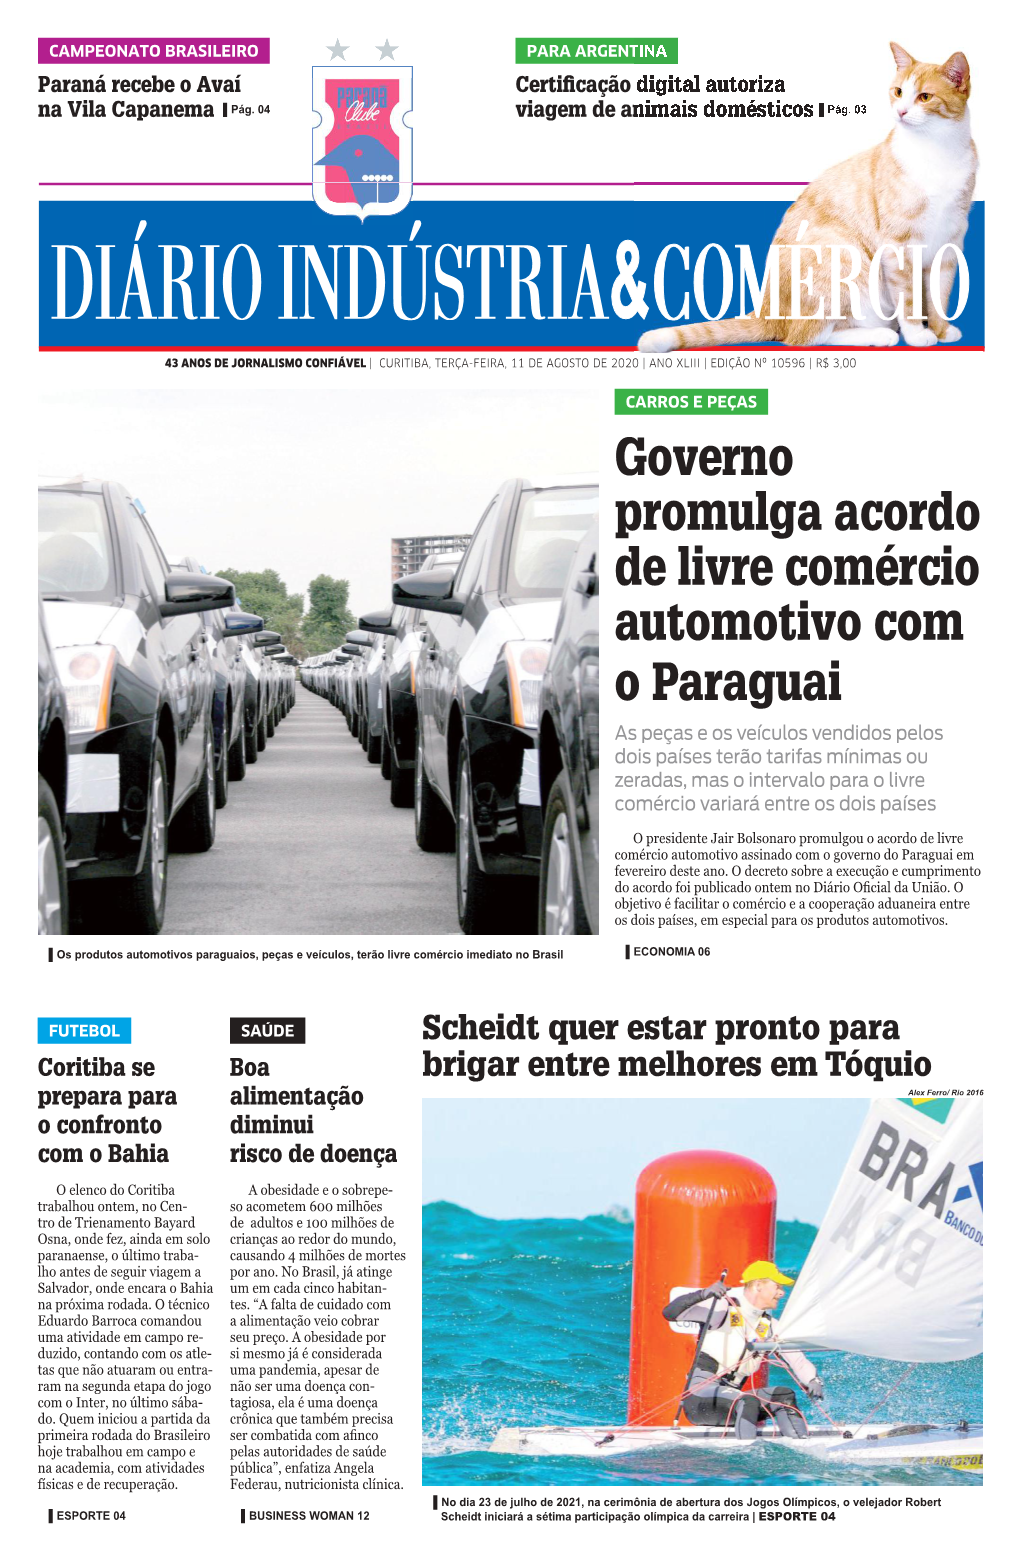 Governo Promulga Acordo De Livre Comércio Automotivo Com O Paraguai